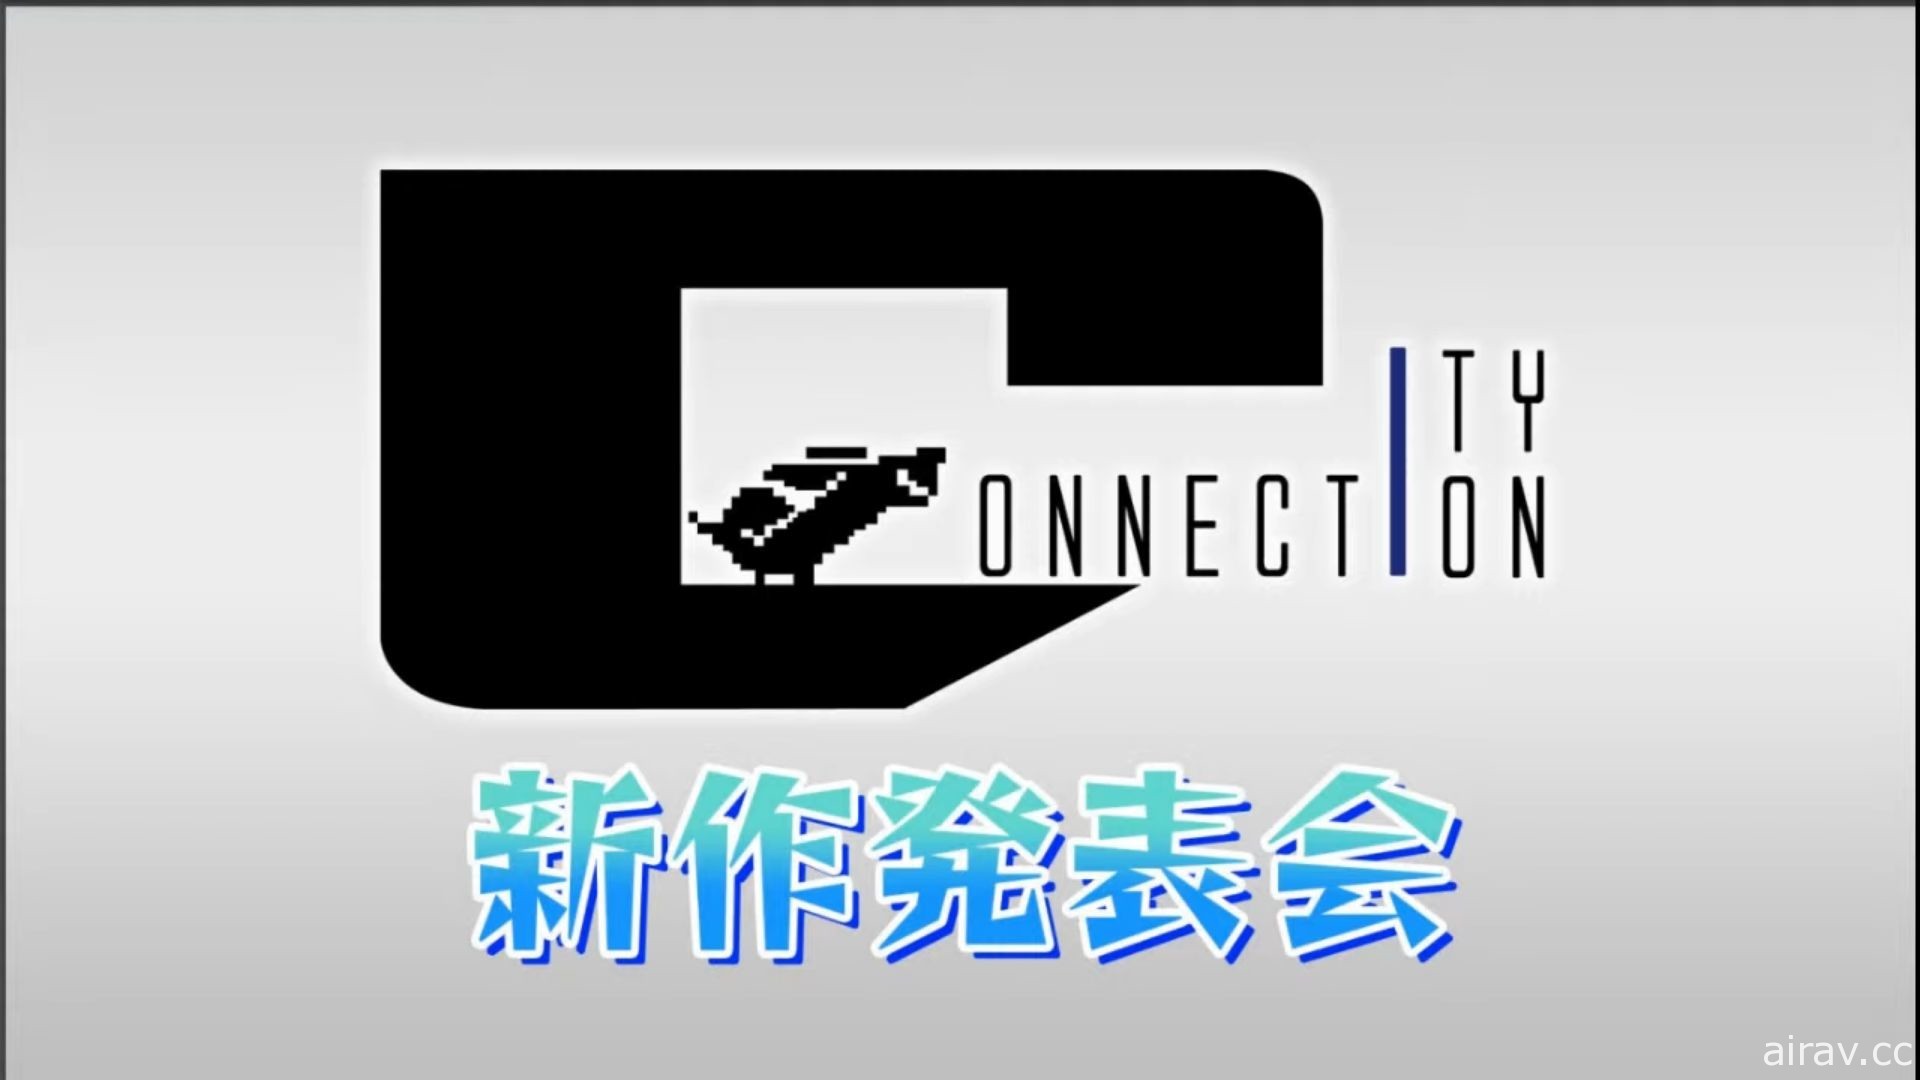 City Connection 舉辦「S 致敬精選輯 X TAITO」發表會 將推出多款經典復刻遊戲